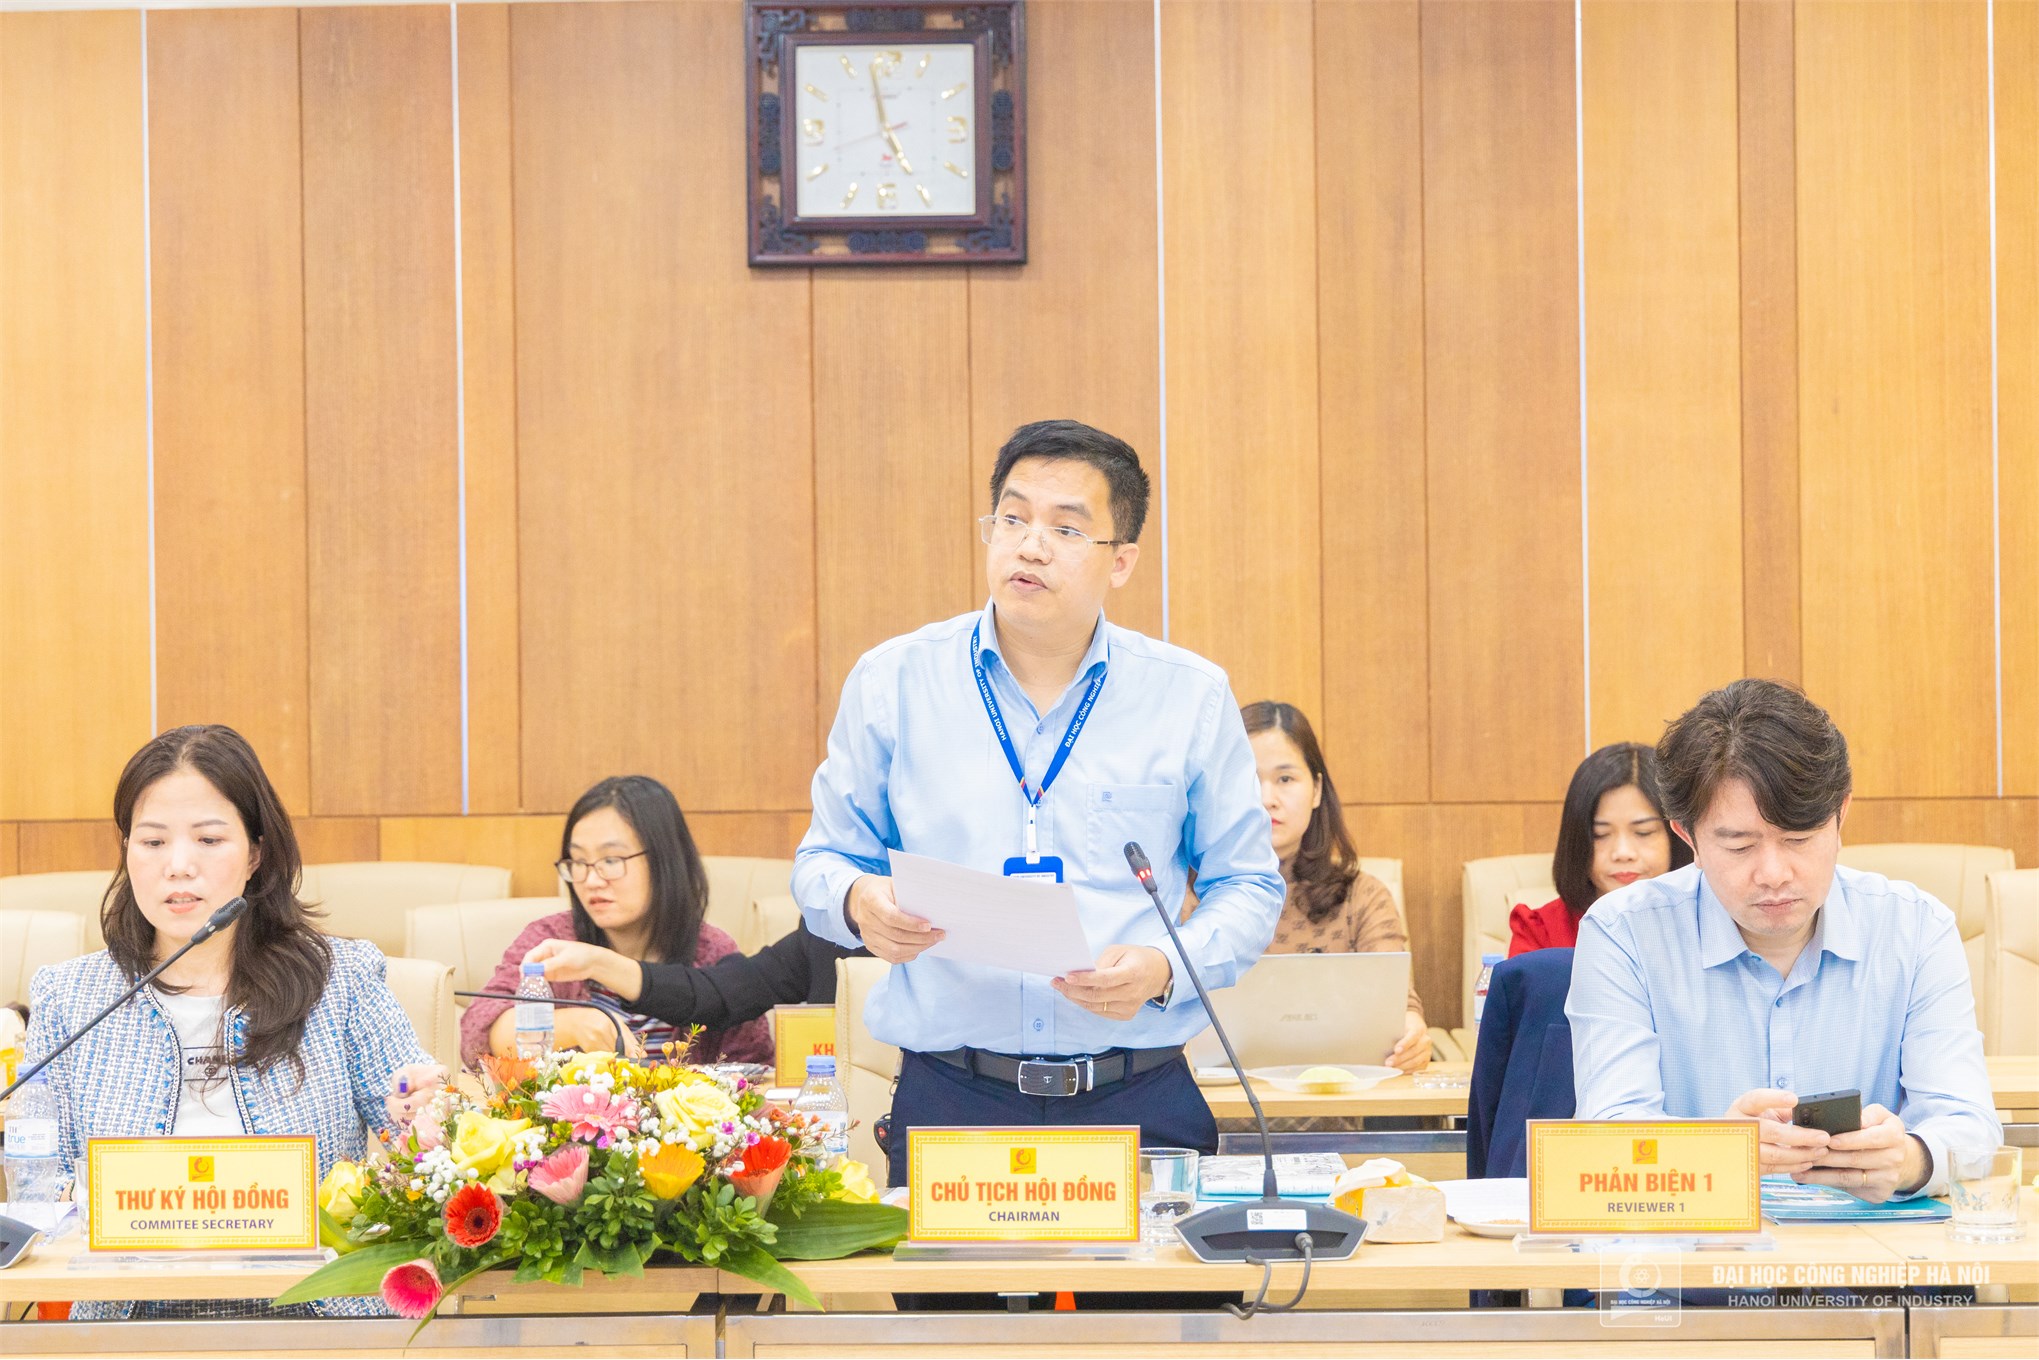 Chúc mừng NCS Nguyễn Thị Dự bảo vệ thành công luận án tiến sĩ cấp trường - chuyên ngành Kế toán.